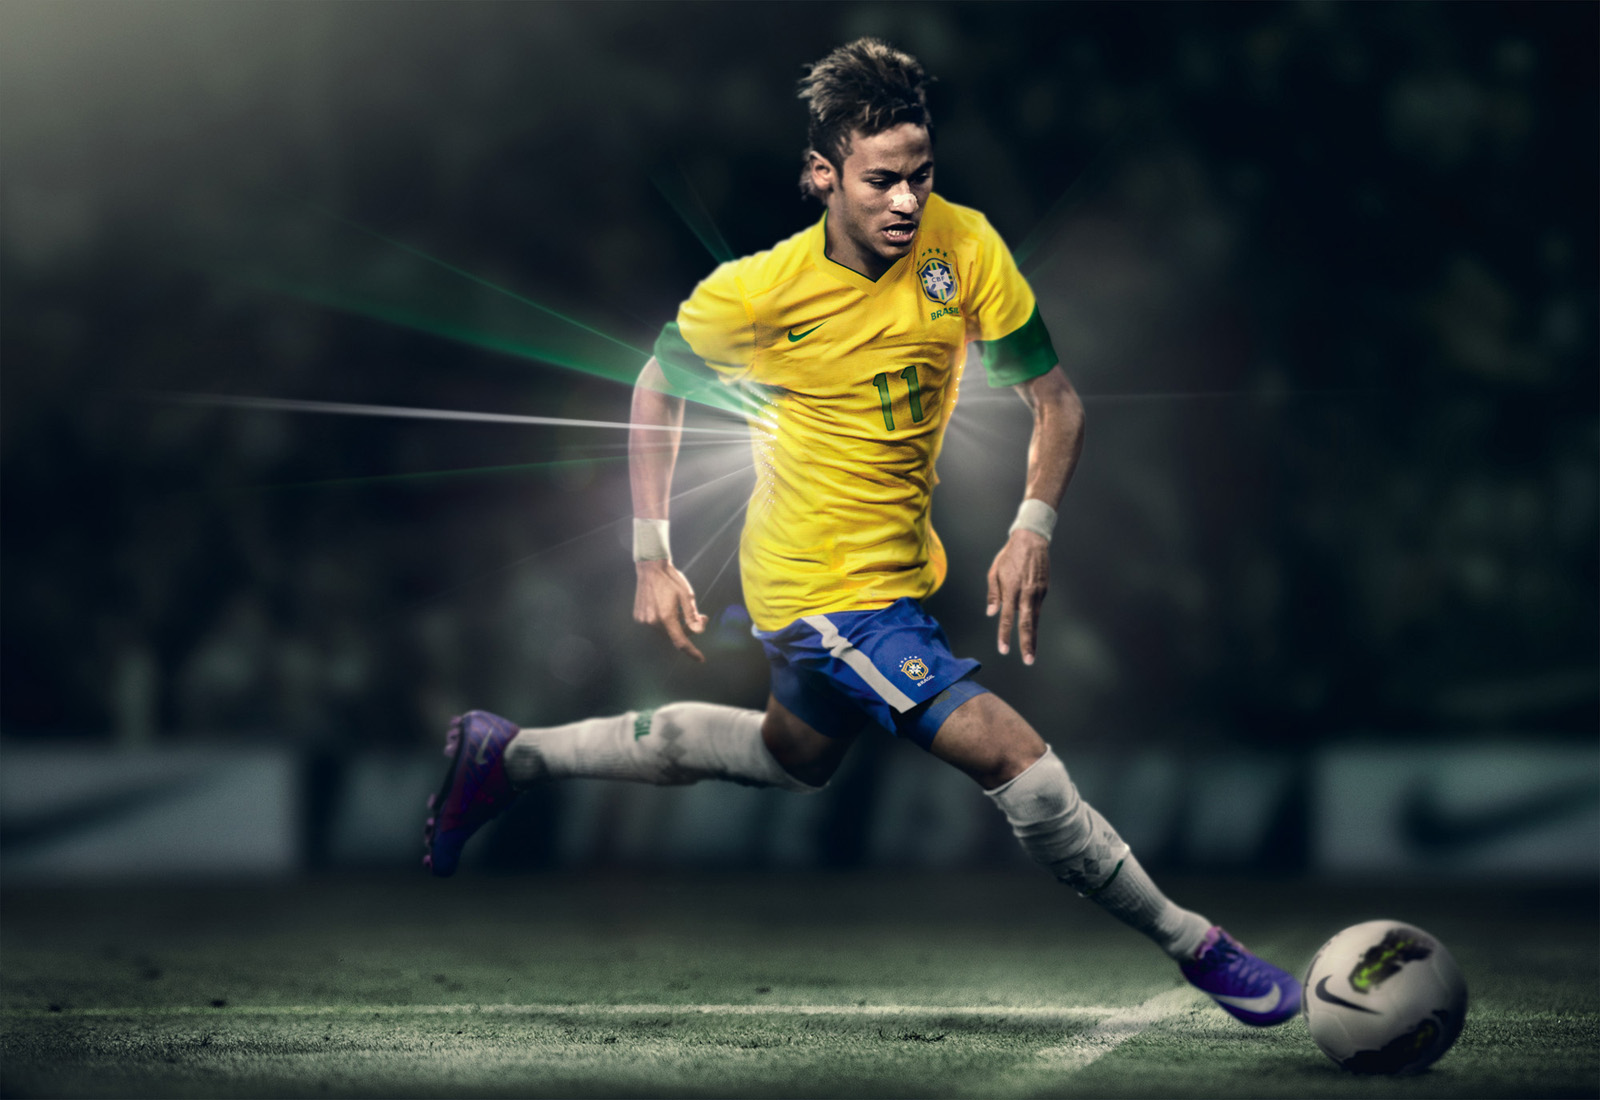 Neymar Wallpaper8 - 13 Number Football Player - HD Wallpaper 